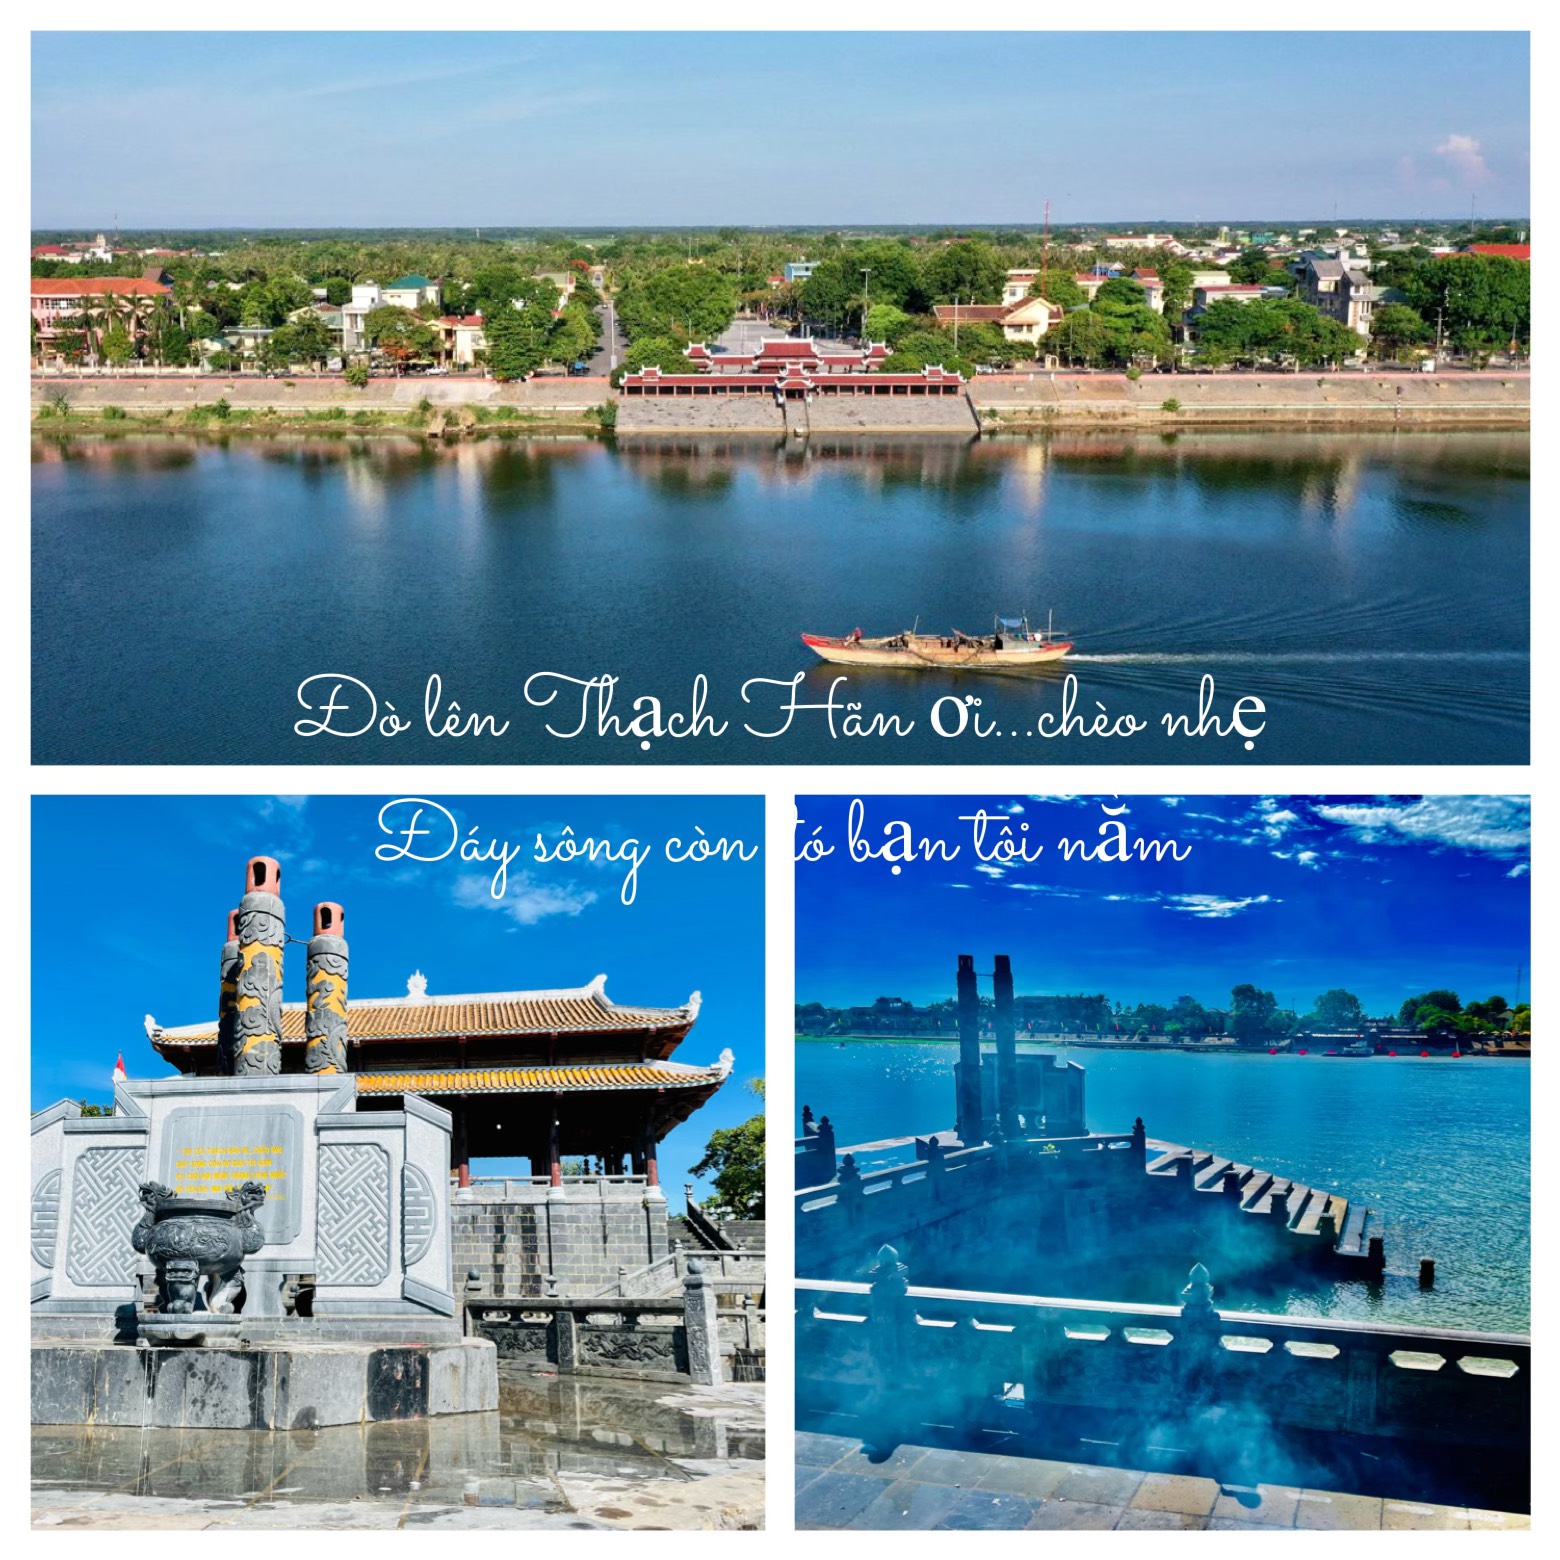 Bến thả hoa bờ Nam sông Thạch Hãn nằm trong quần thể Di tích quốc gia đặc biệt Thành cổ Quảng Trị.
